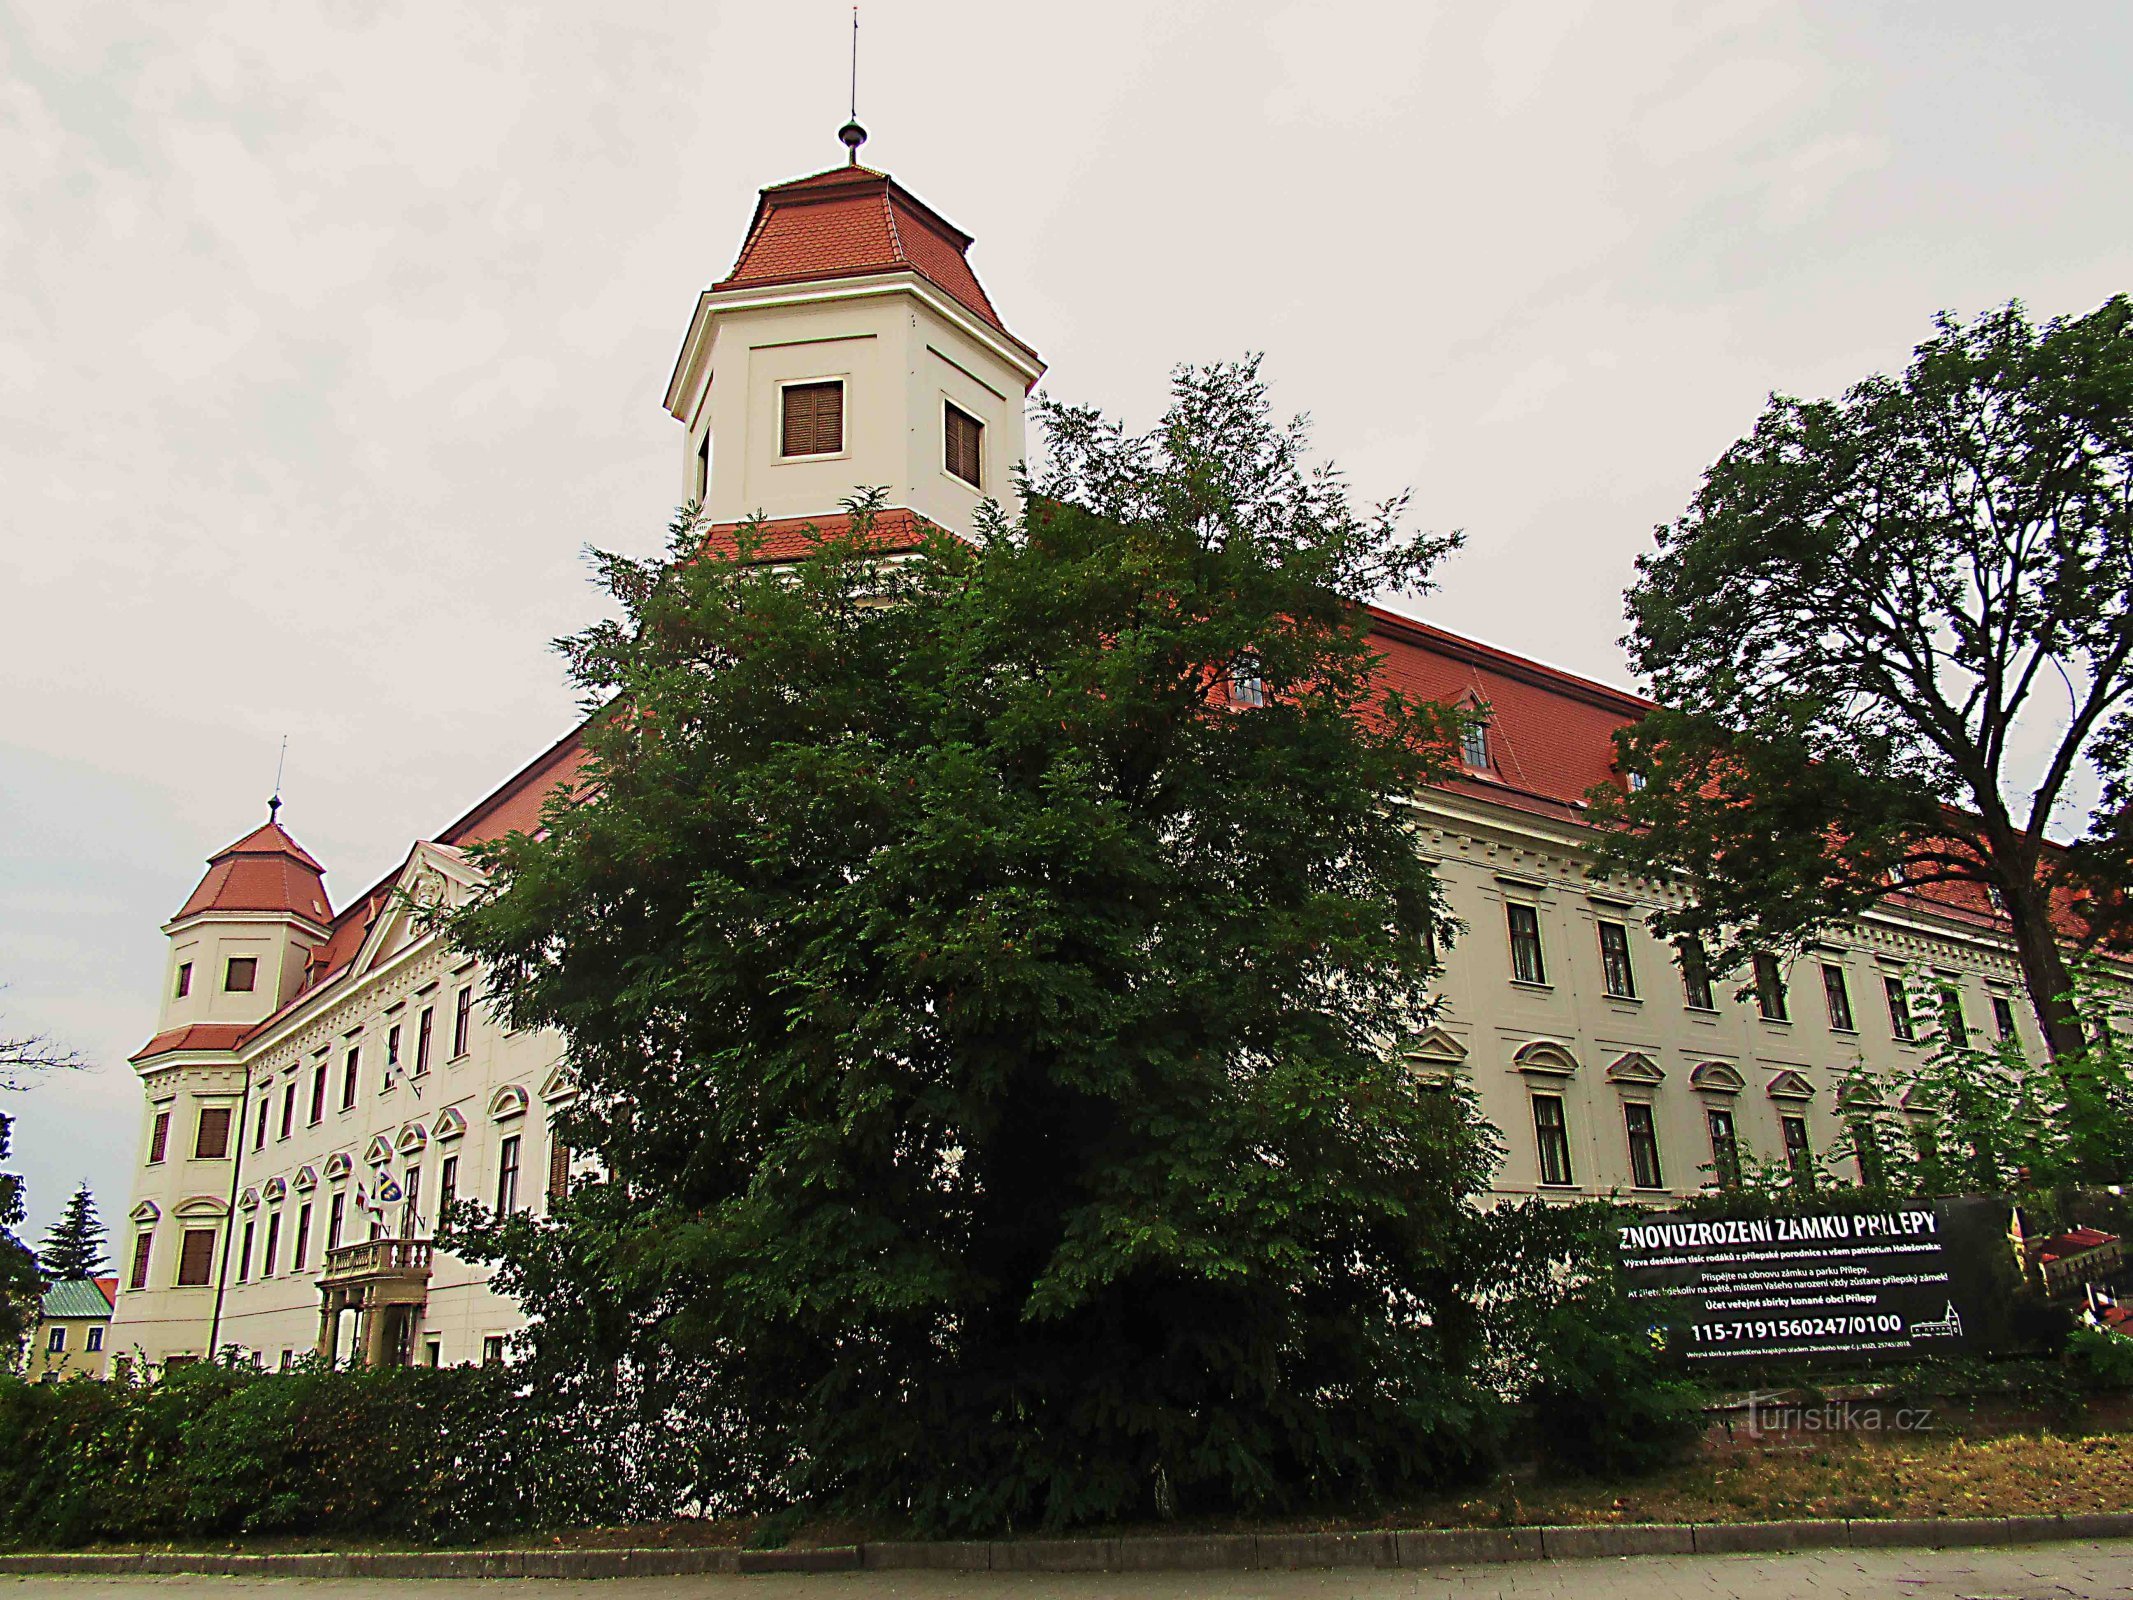 Ecocentrum - Hájenka Skřítek in het kasteelpark Holešov